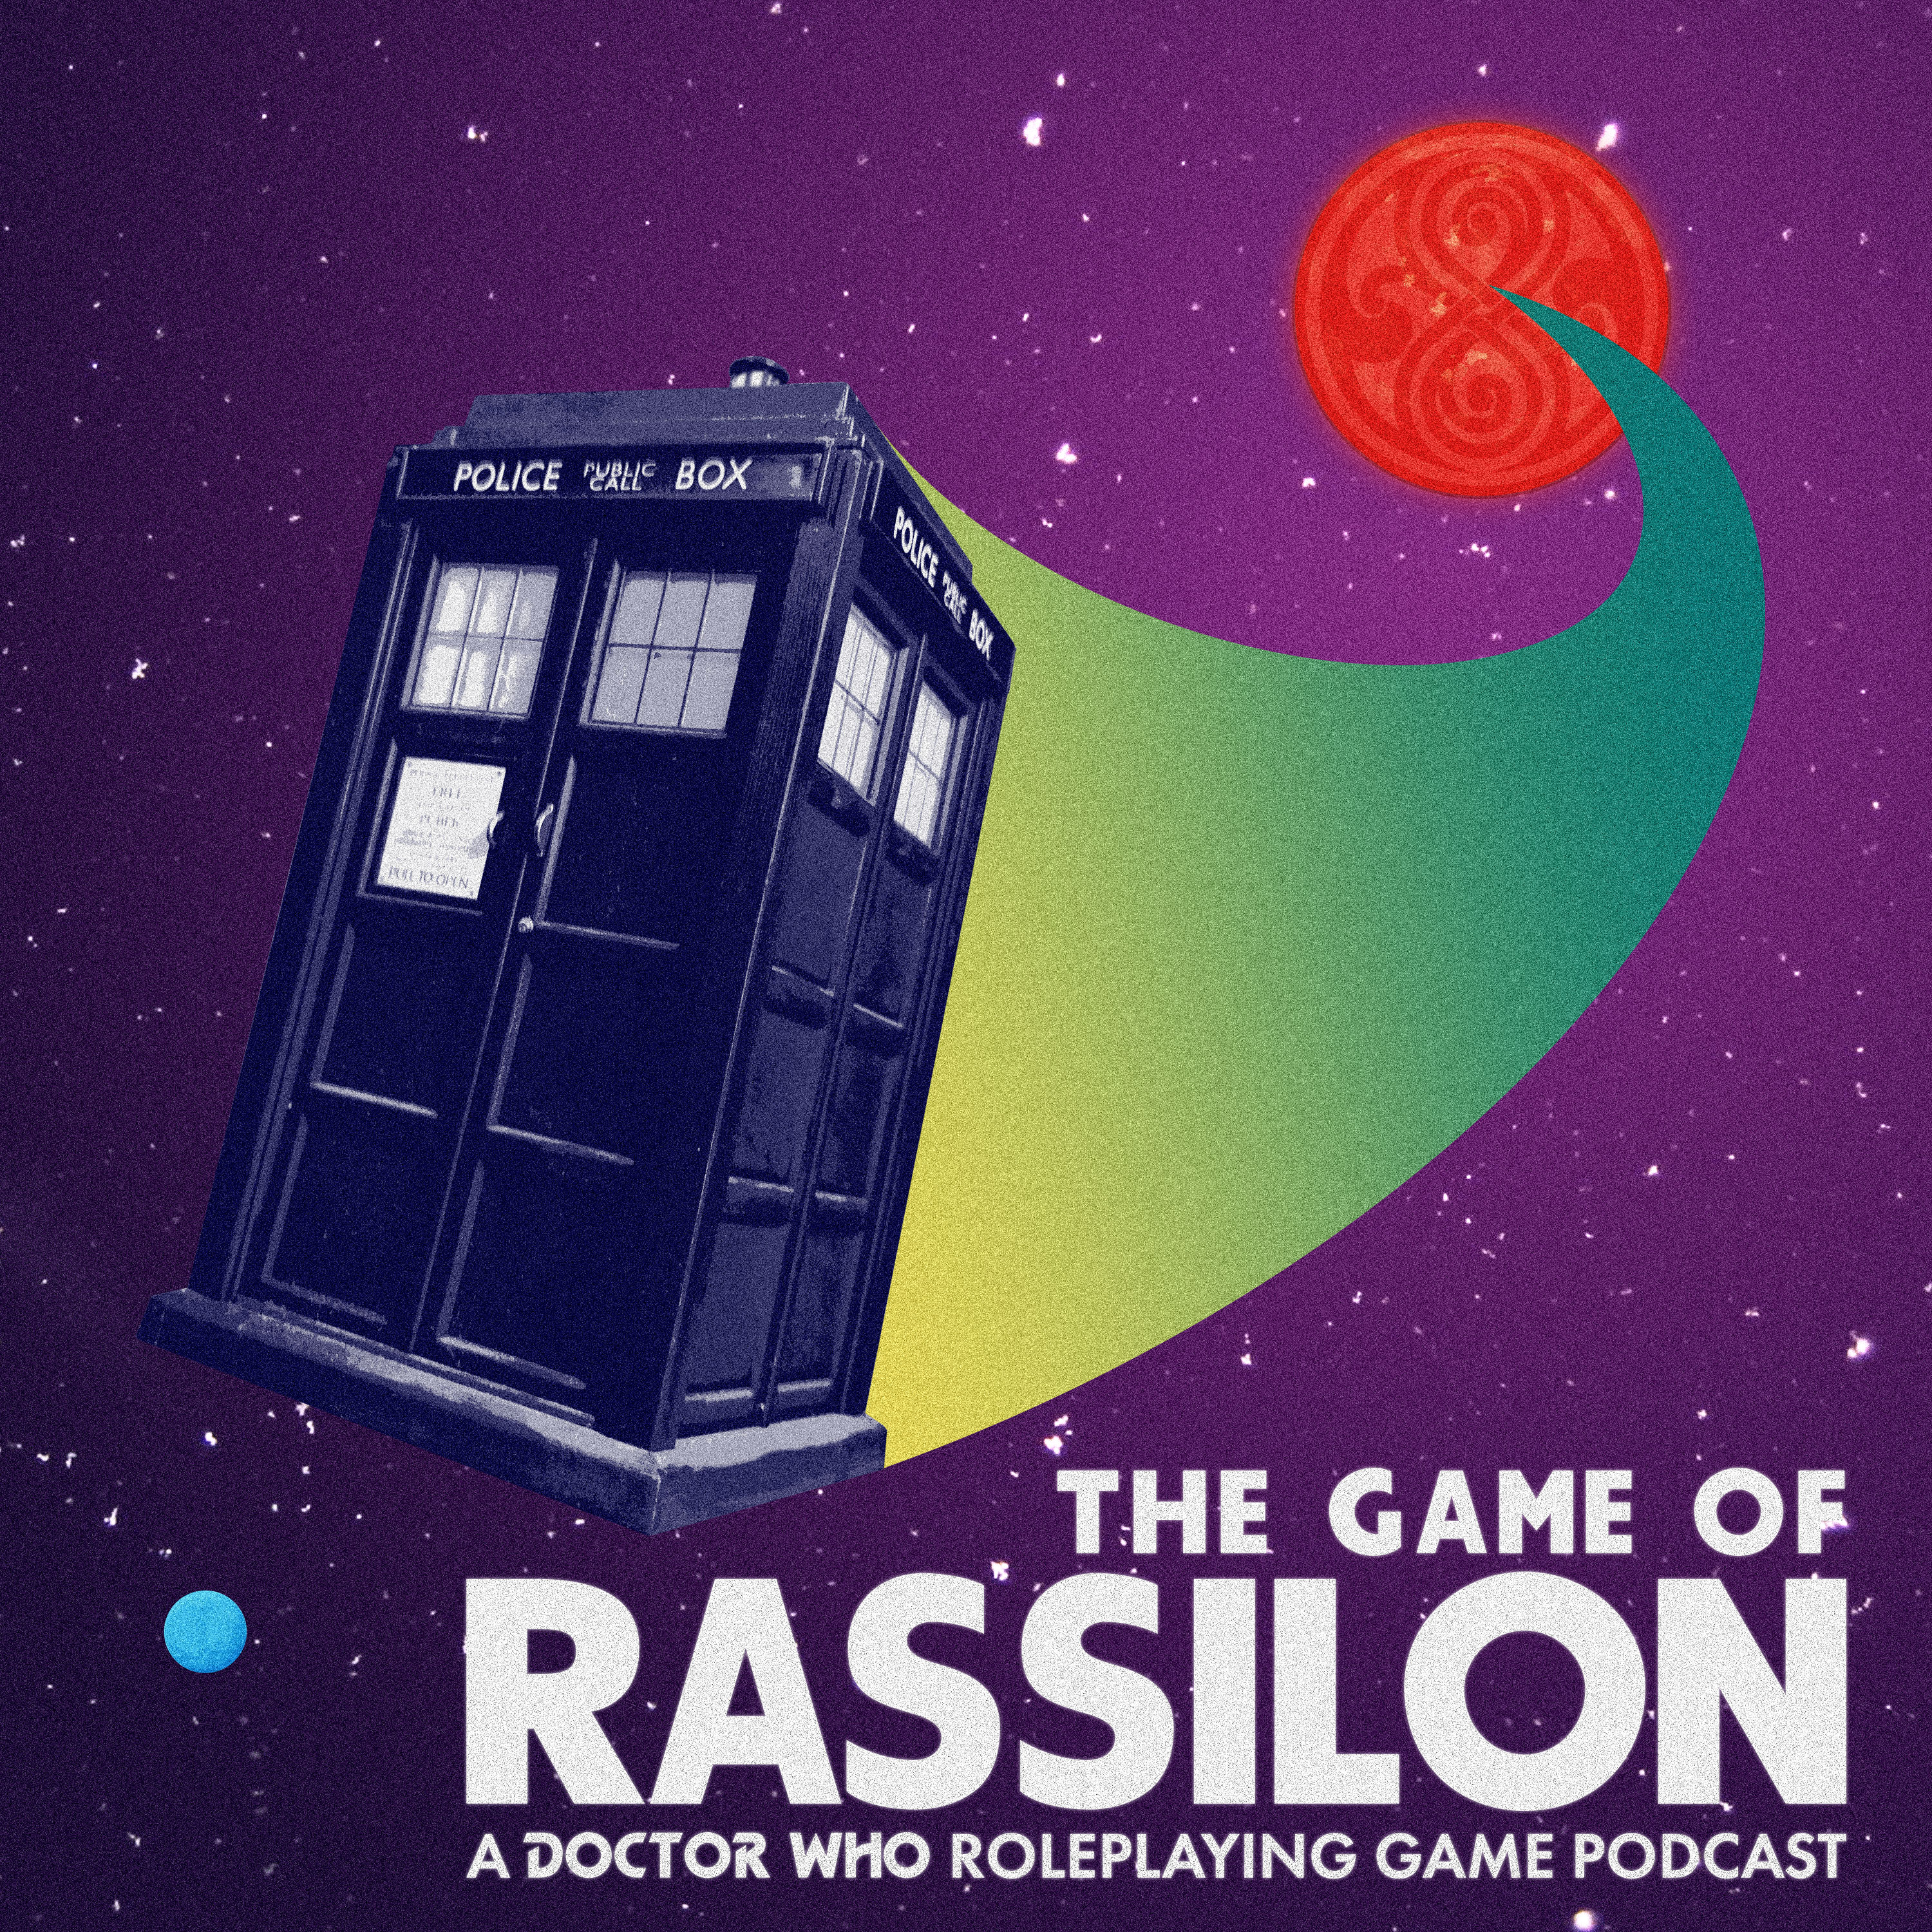 The Game of Rassilon